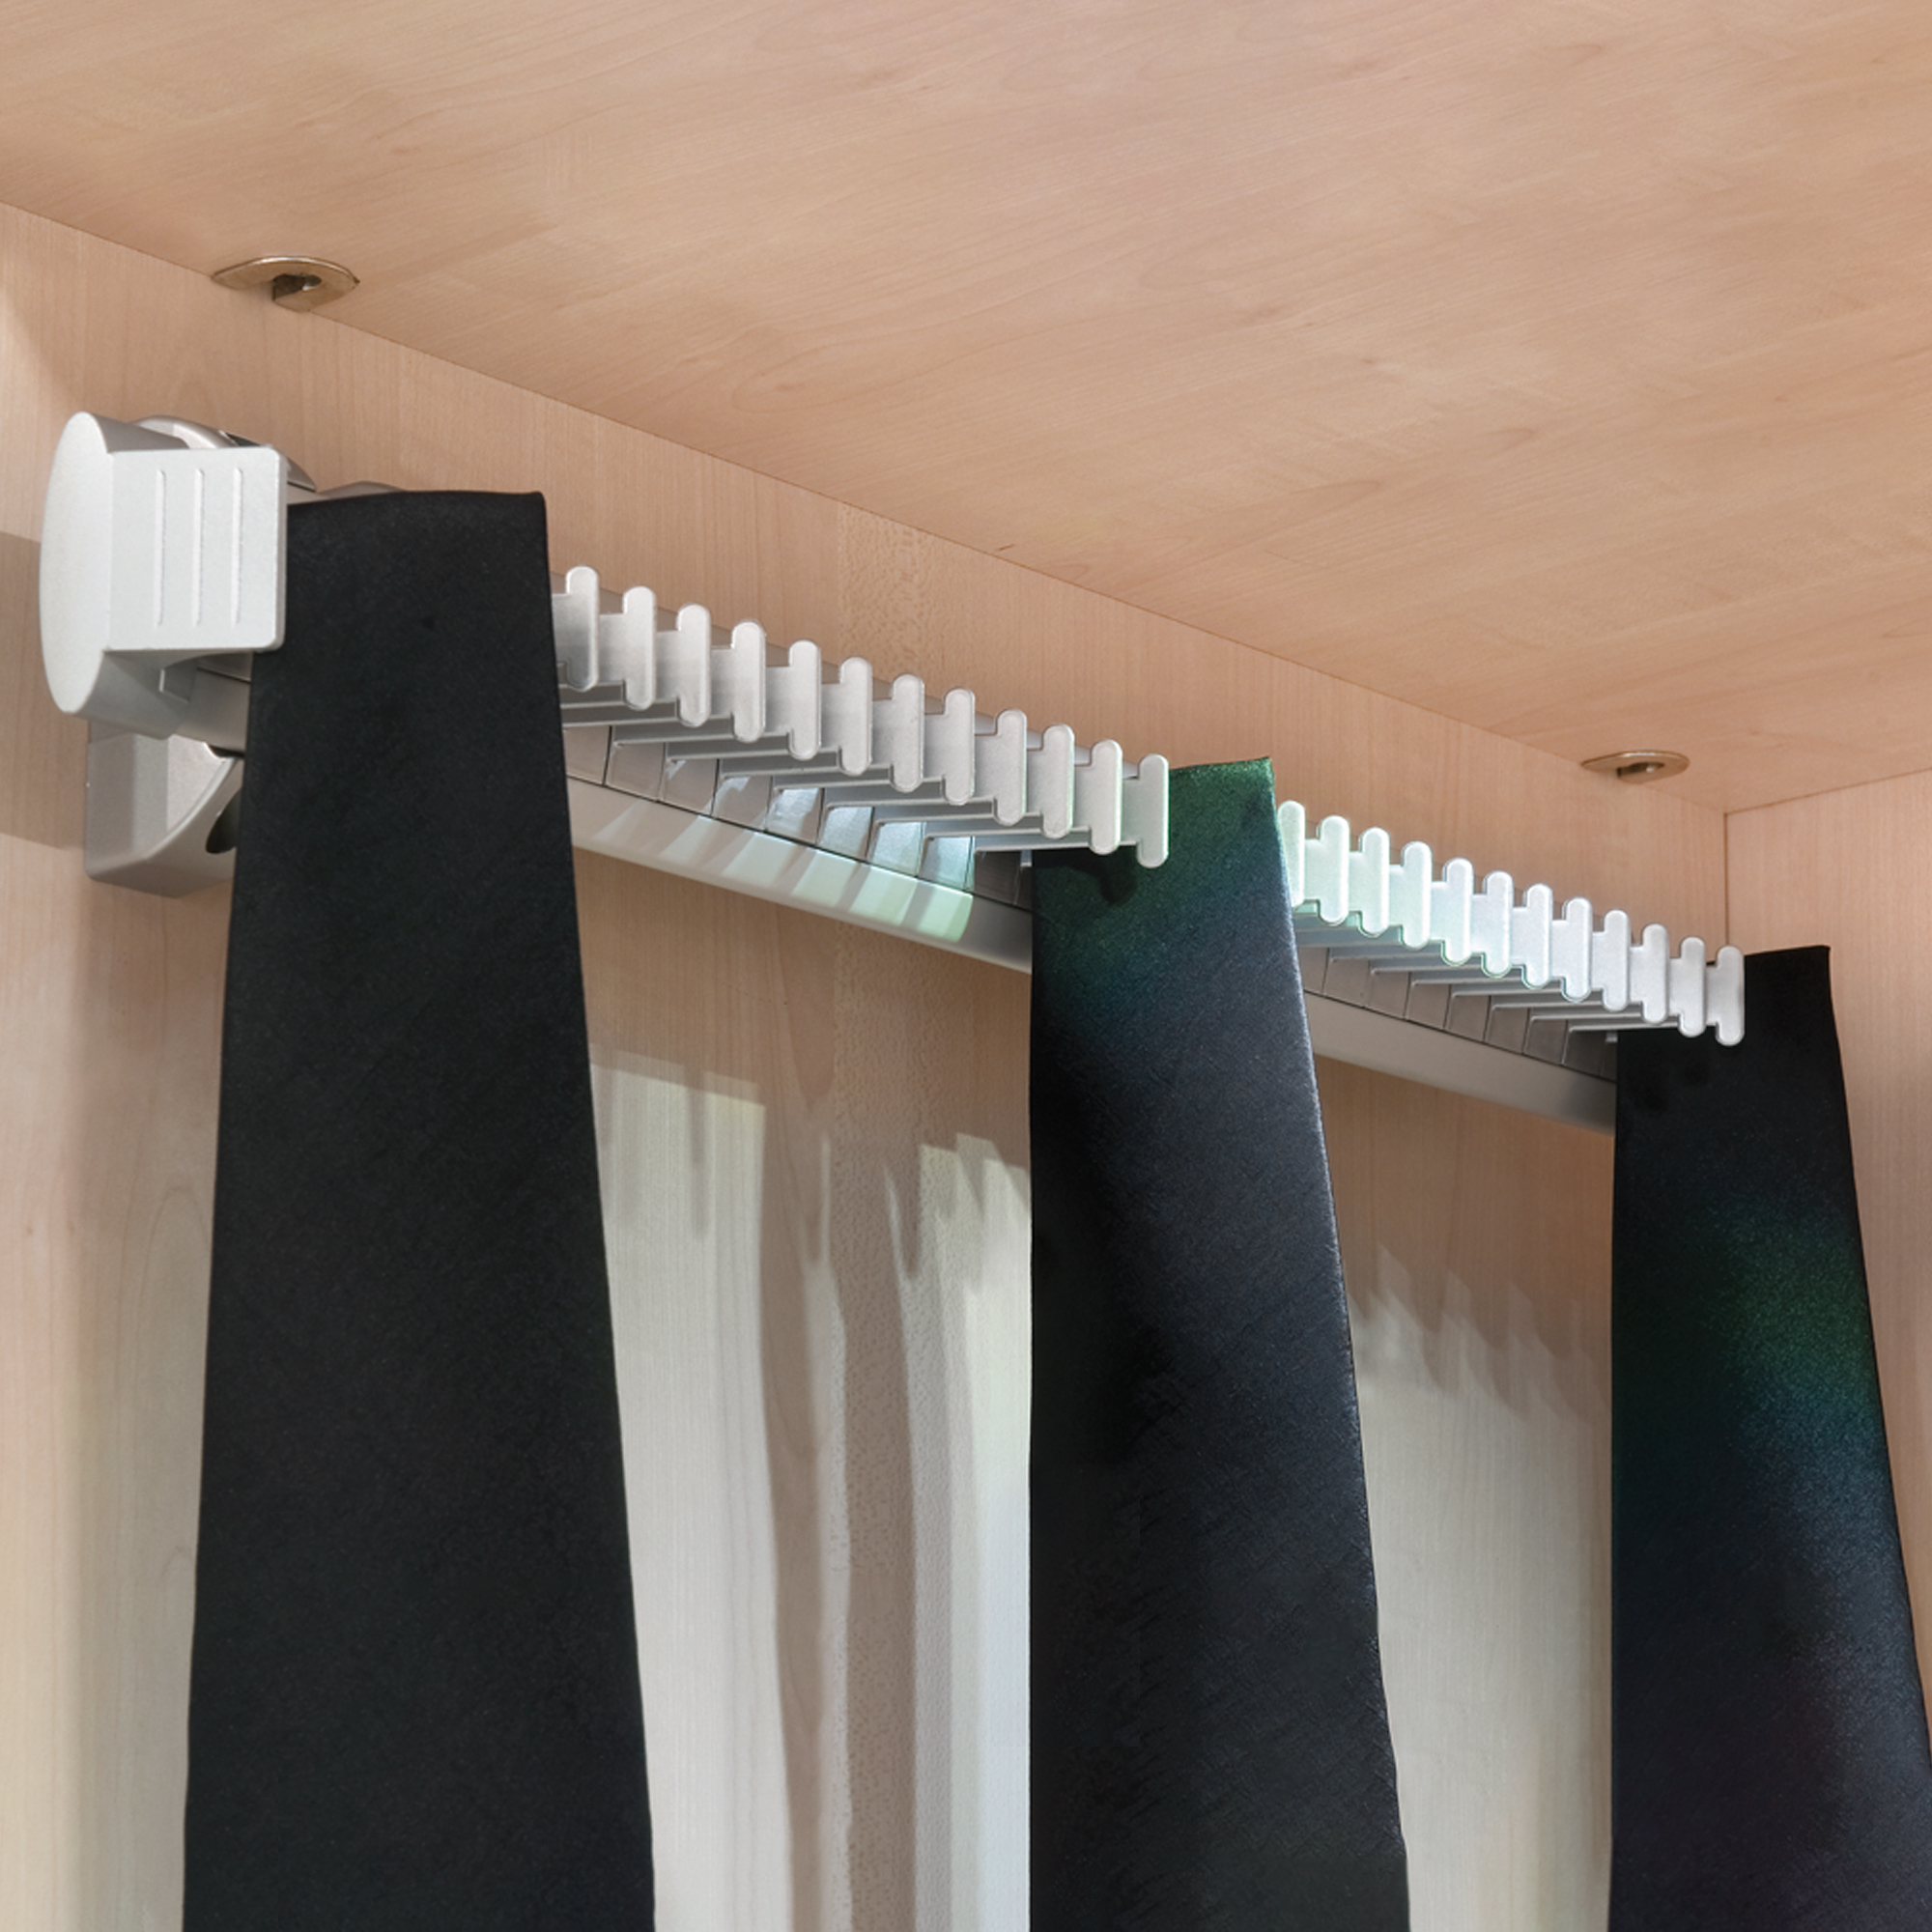  Porte cravates lateral extractible, Anodise mat, Plastique et Aluminium.